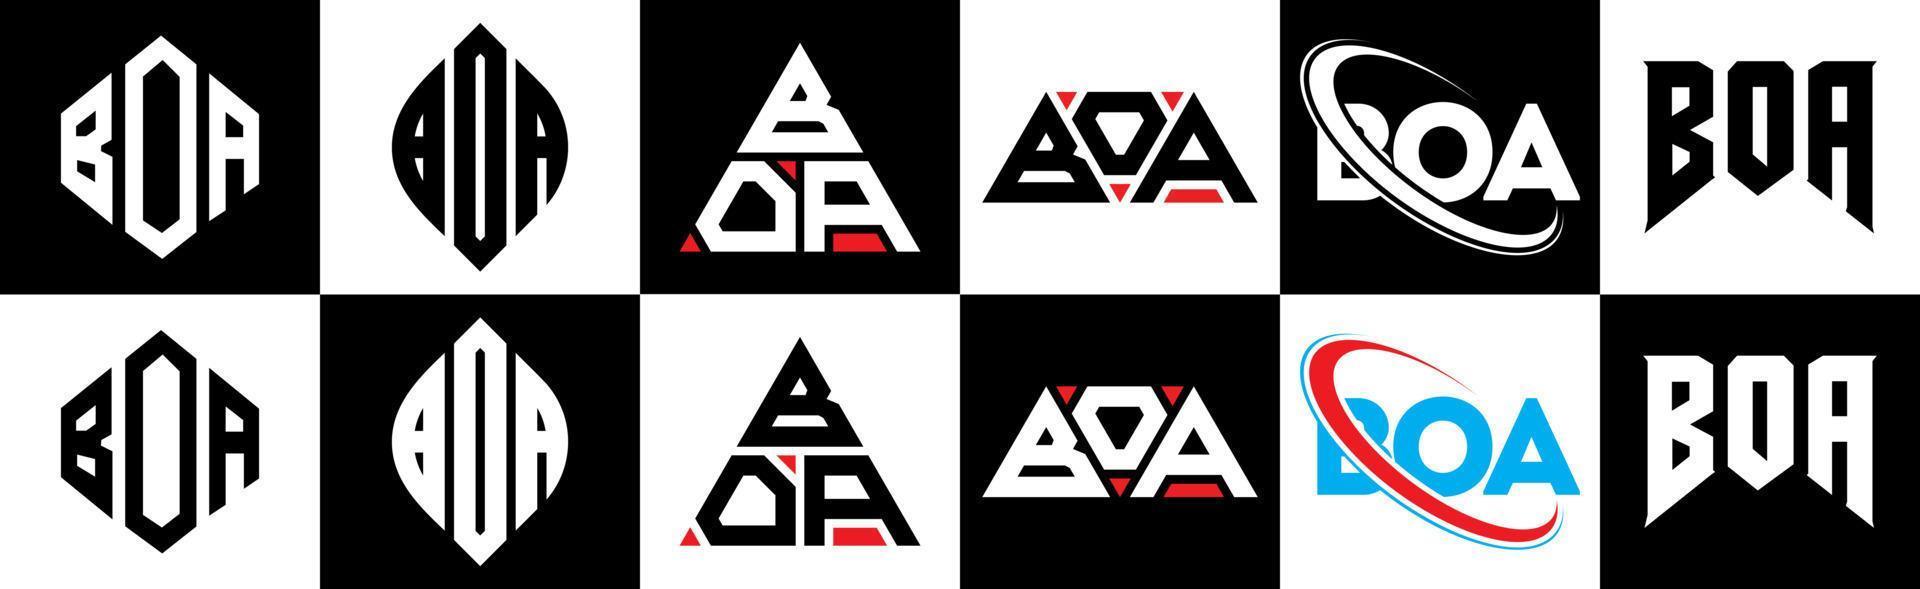 création de logo de lettre boa en six styles. boa polygone, cercle, triangle, hexagone, style plat et simple avec logo de lettre de variation de couleur noir et blanc dans un plan de travail. boa logo minimaliste et classique vecteur